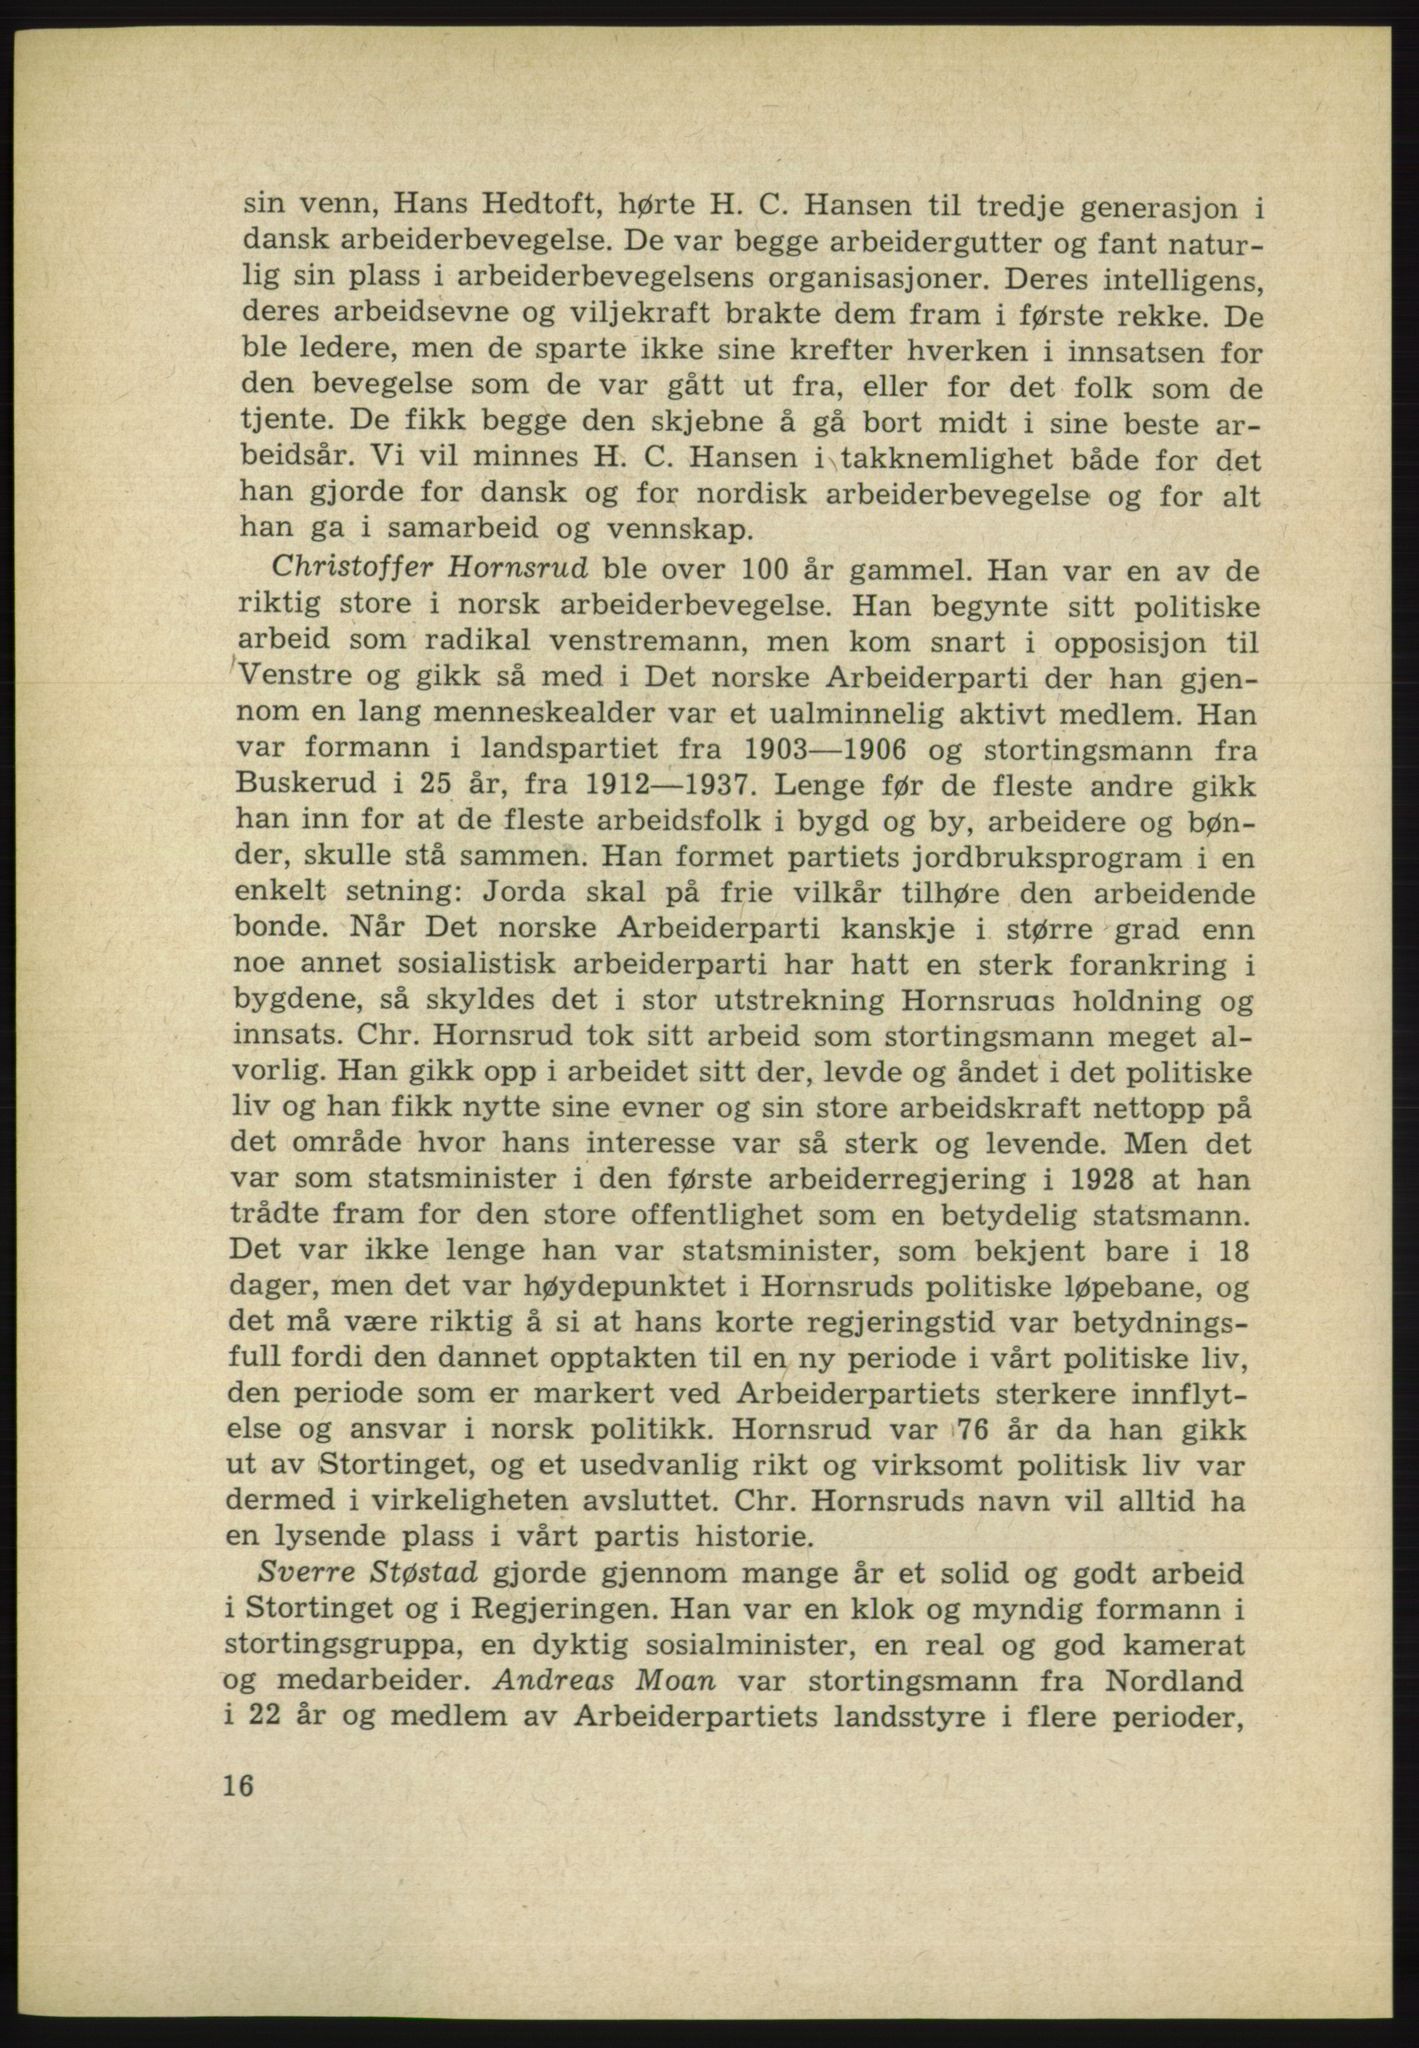 Det norske Arbeiderparti - publikasjoner, AAB/-/-/-: Protokoll over forhandlingene på det 38. ordinære landsmøte 9.-11. april 1961 i Oslo, 1961, p. 16